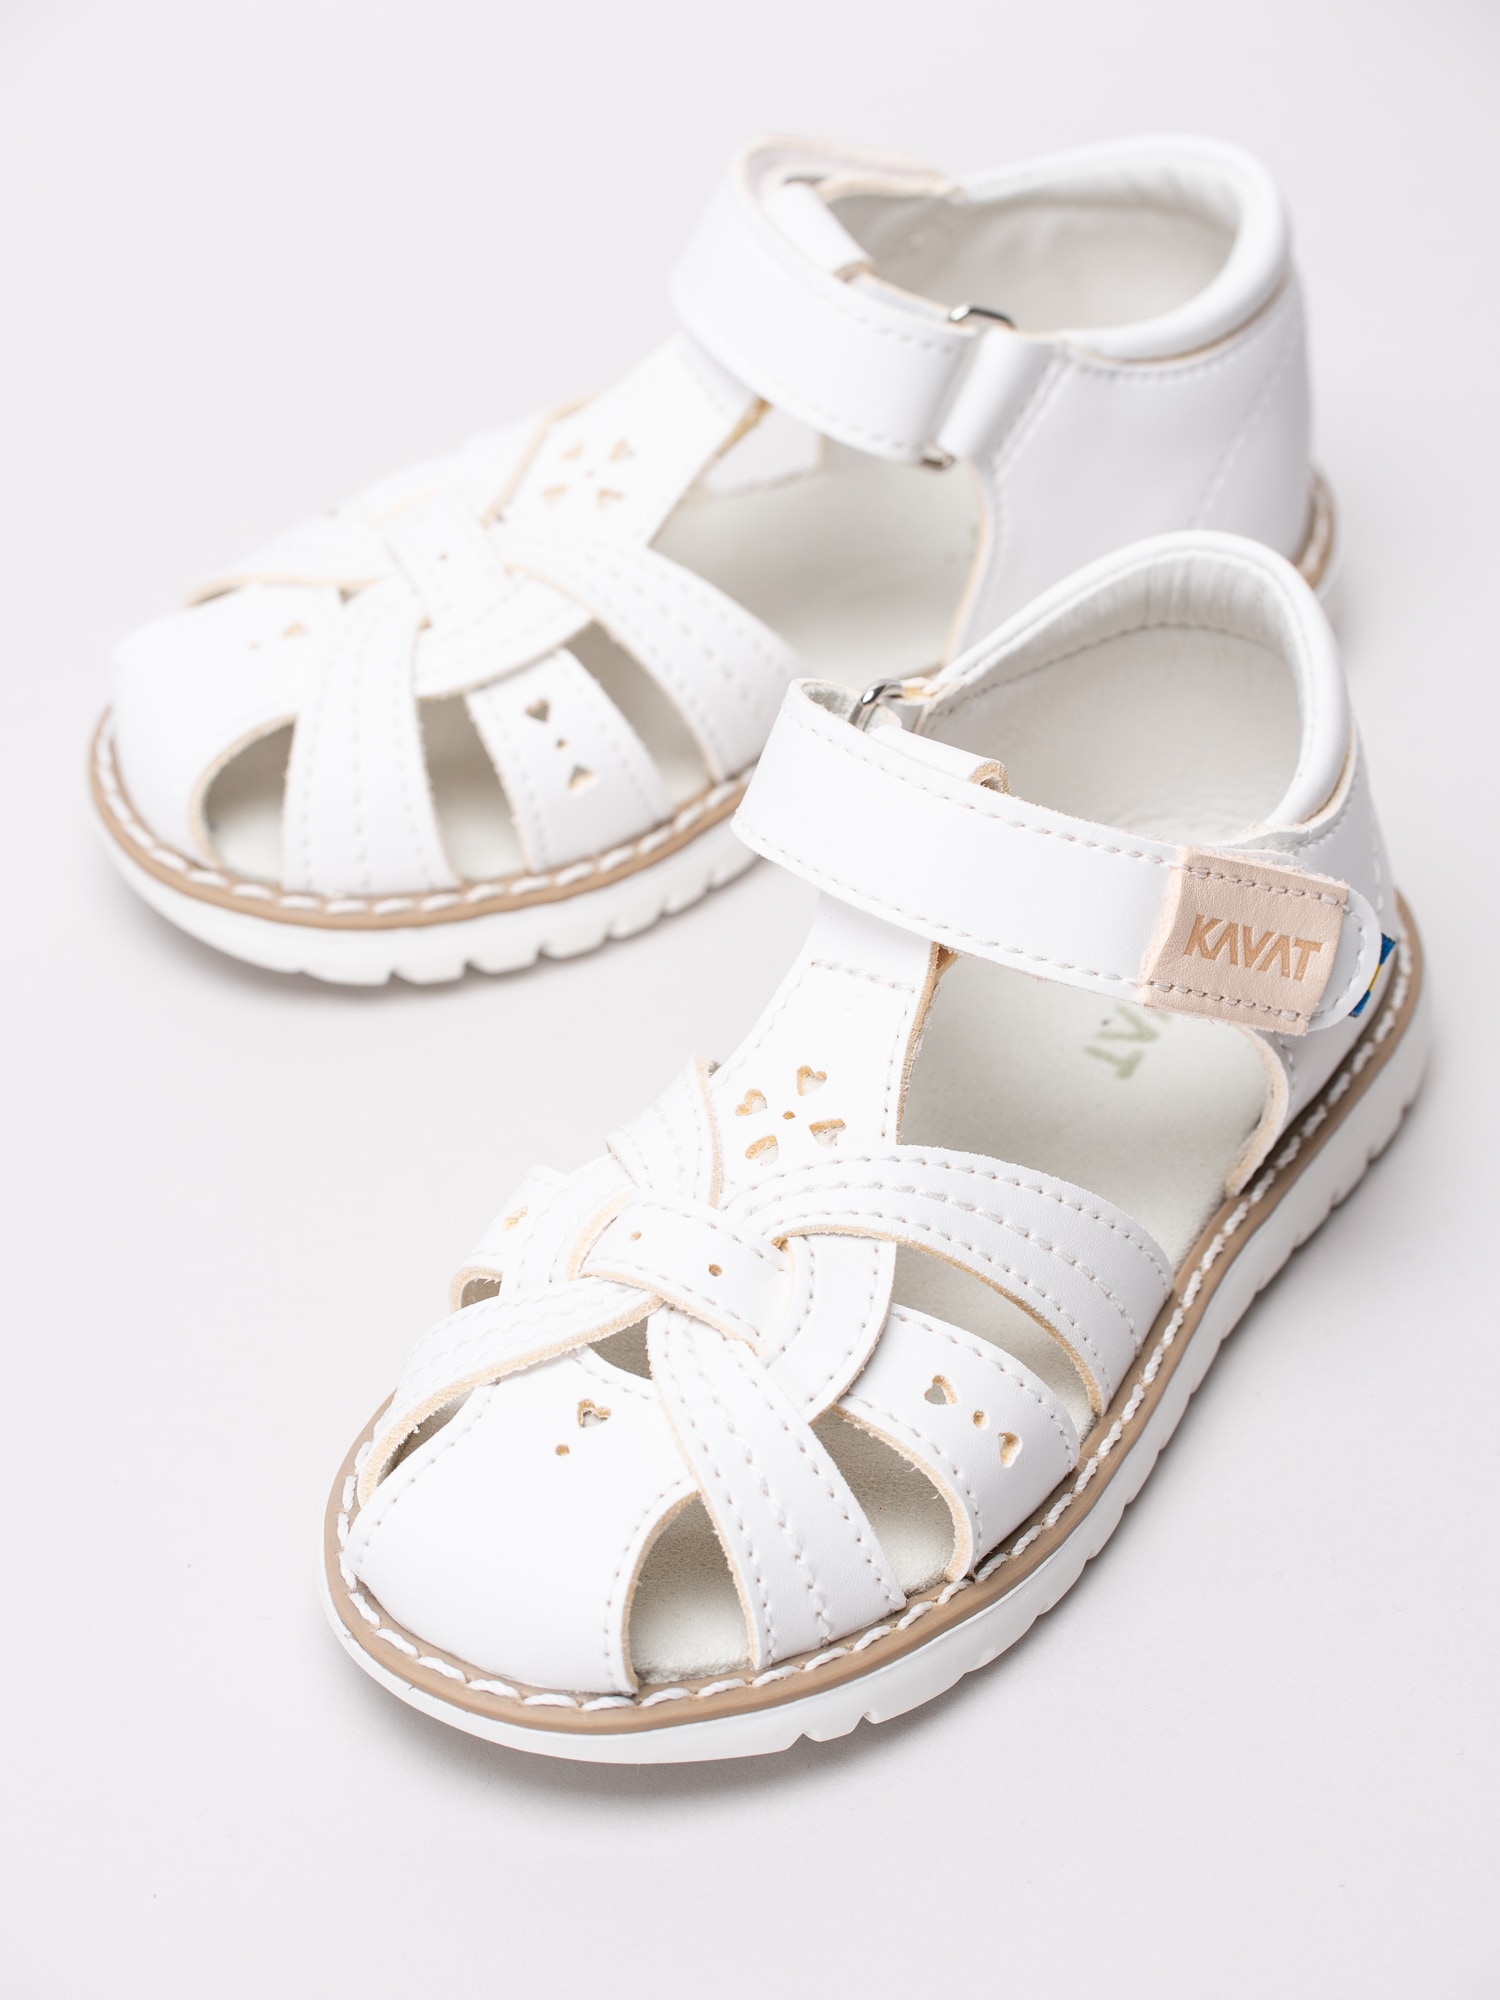 44191024 Kavat Blomviken XC 4091391-988 vita sandalskor med perforerade hjärtan-6